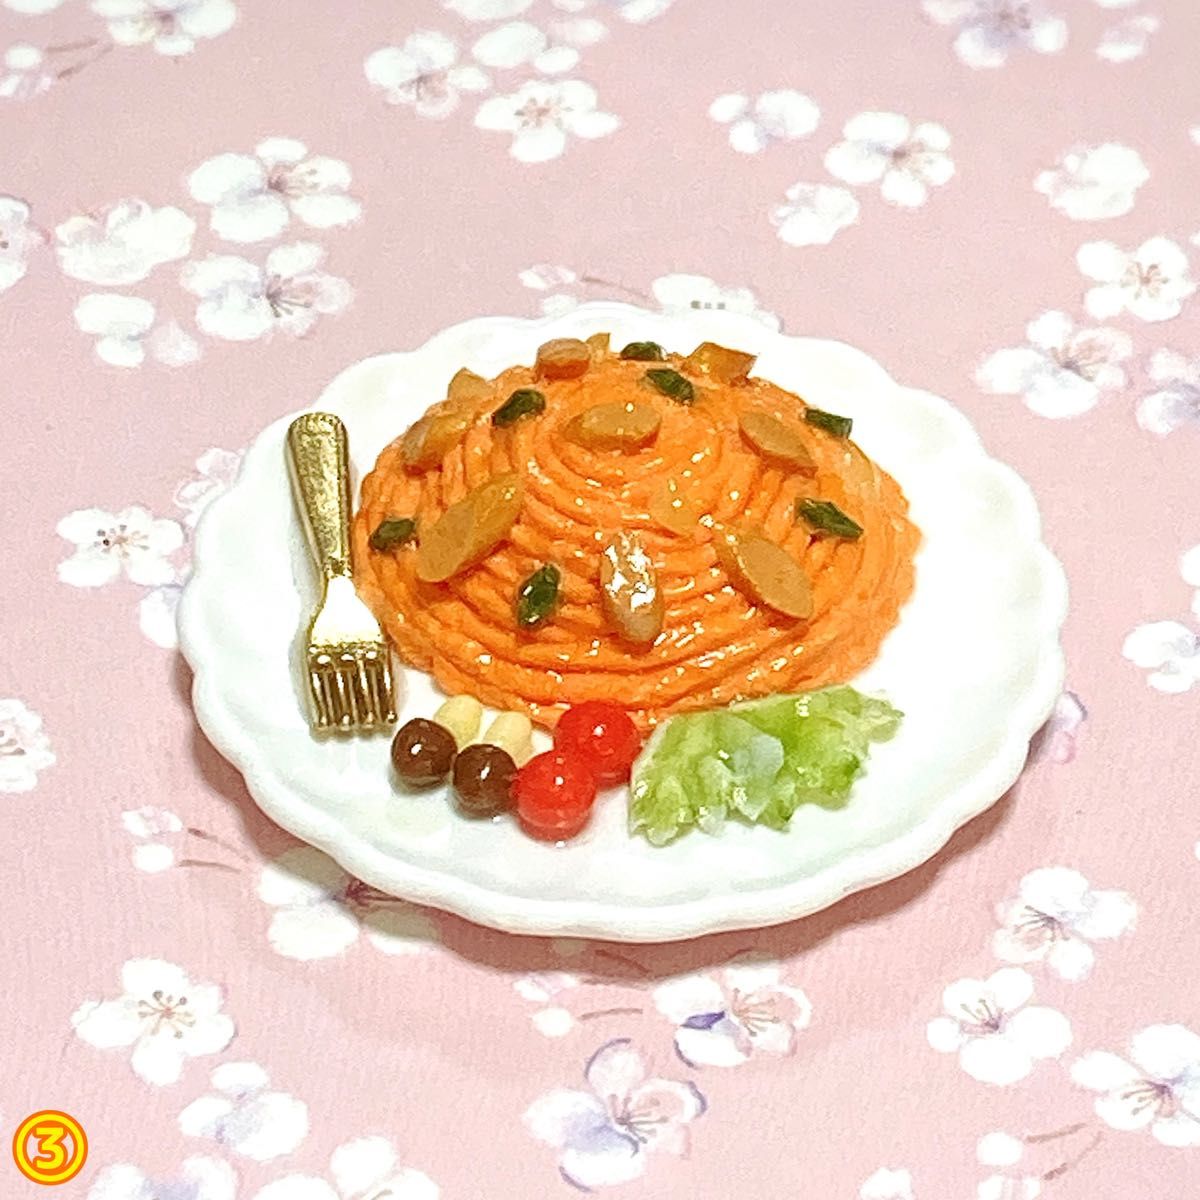 ナポリタン スパゲティのミニチュア☆粘土 フェイクフード 食品サンプル ままごと ハンドメイド ドールハウス